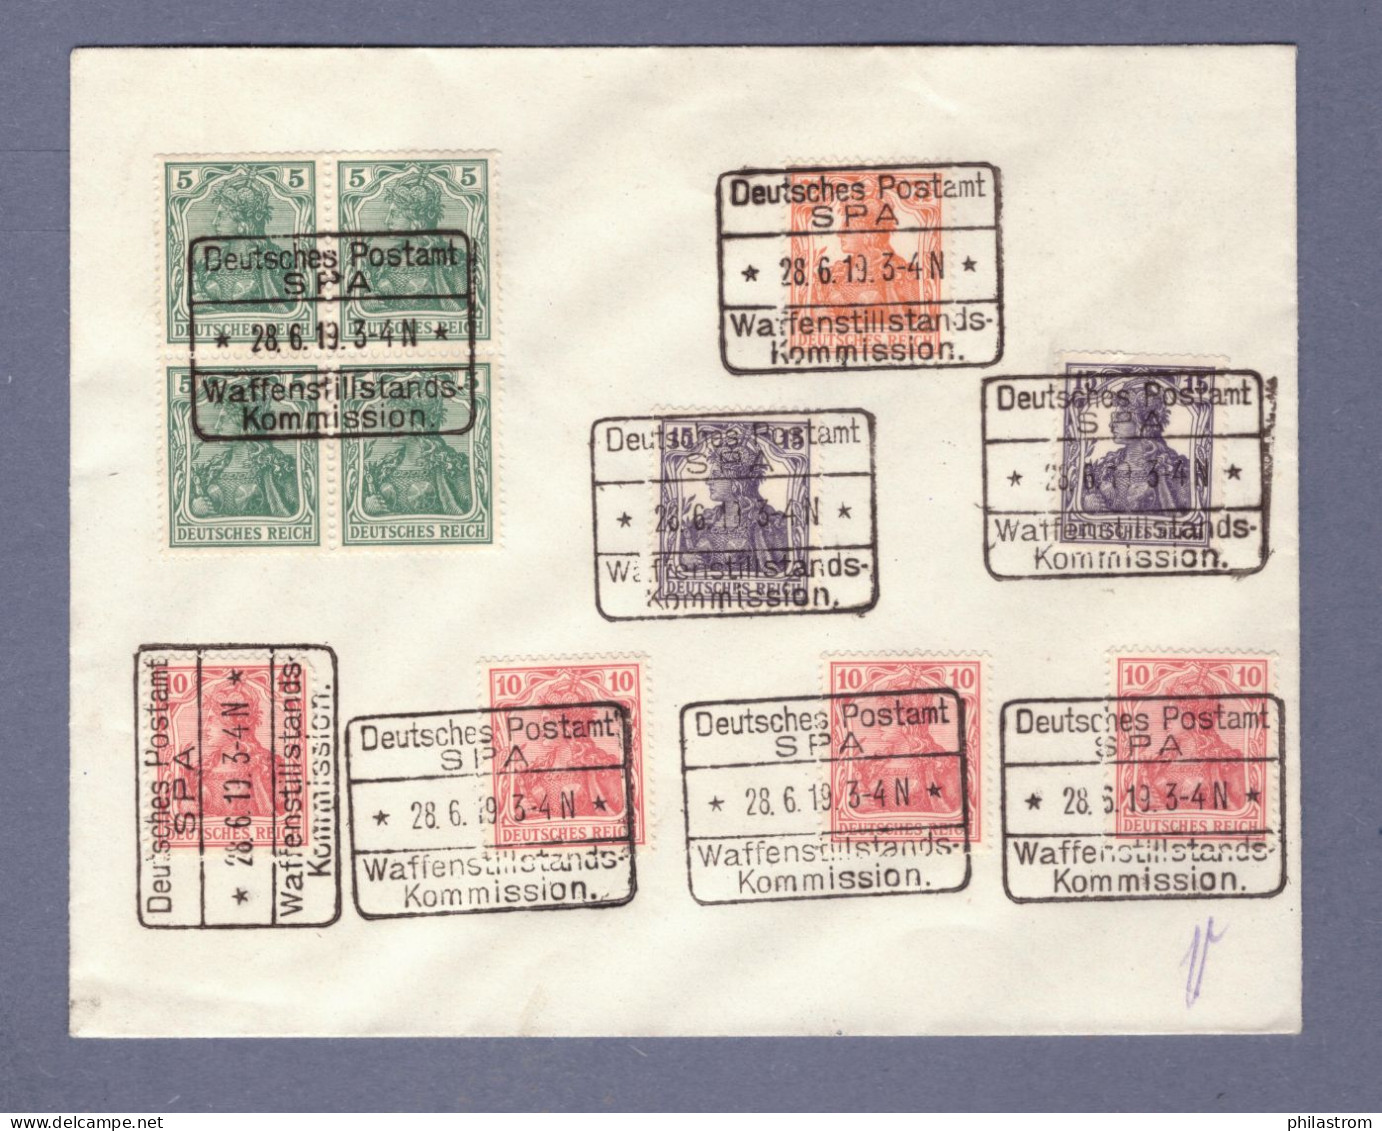 Weimar Brief - Deutsches Postamt SPA - Waffenstillstands Kommission 28.9.19 (CG13110-268) - Briefe U. Dokumente